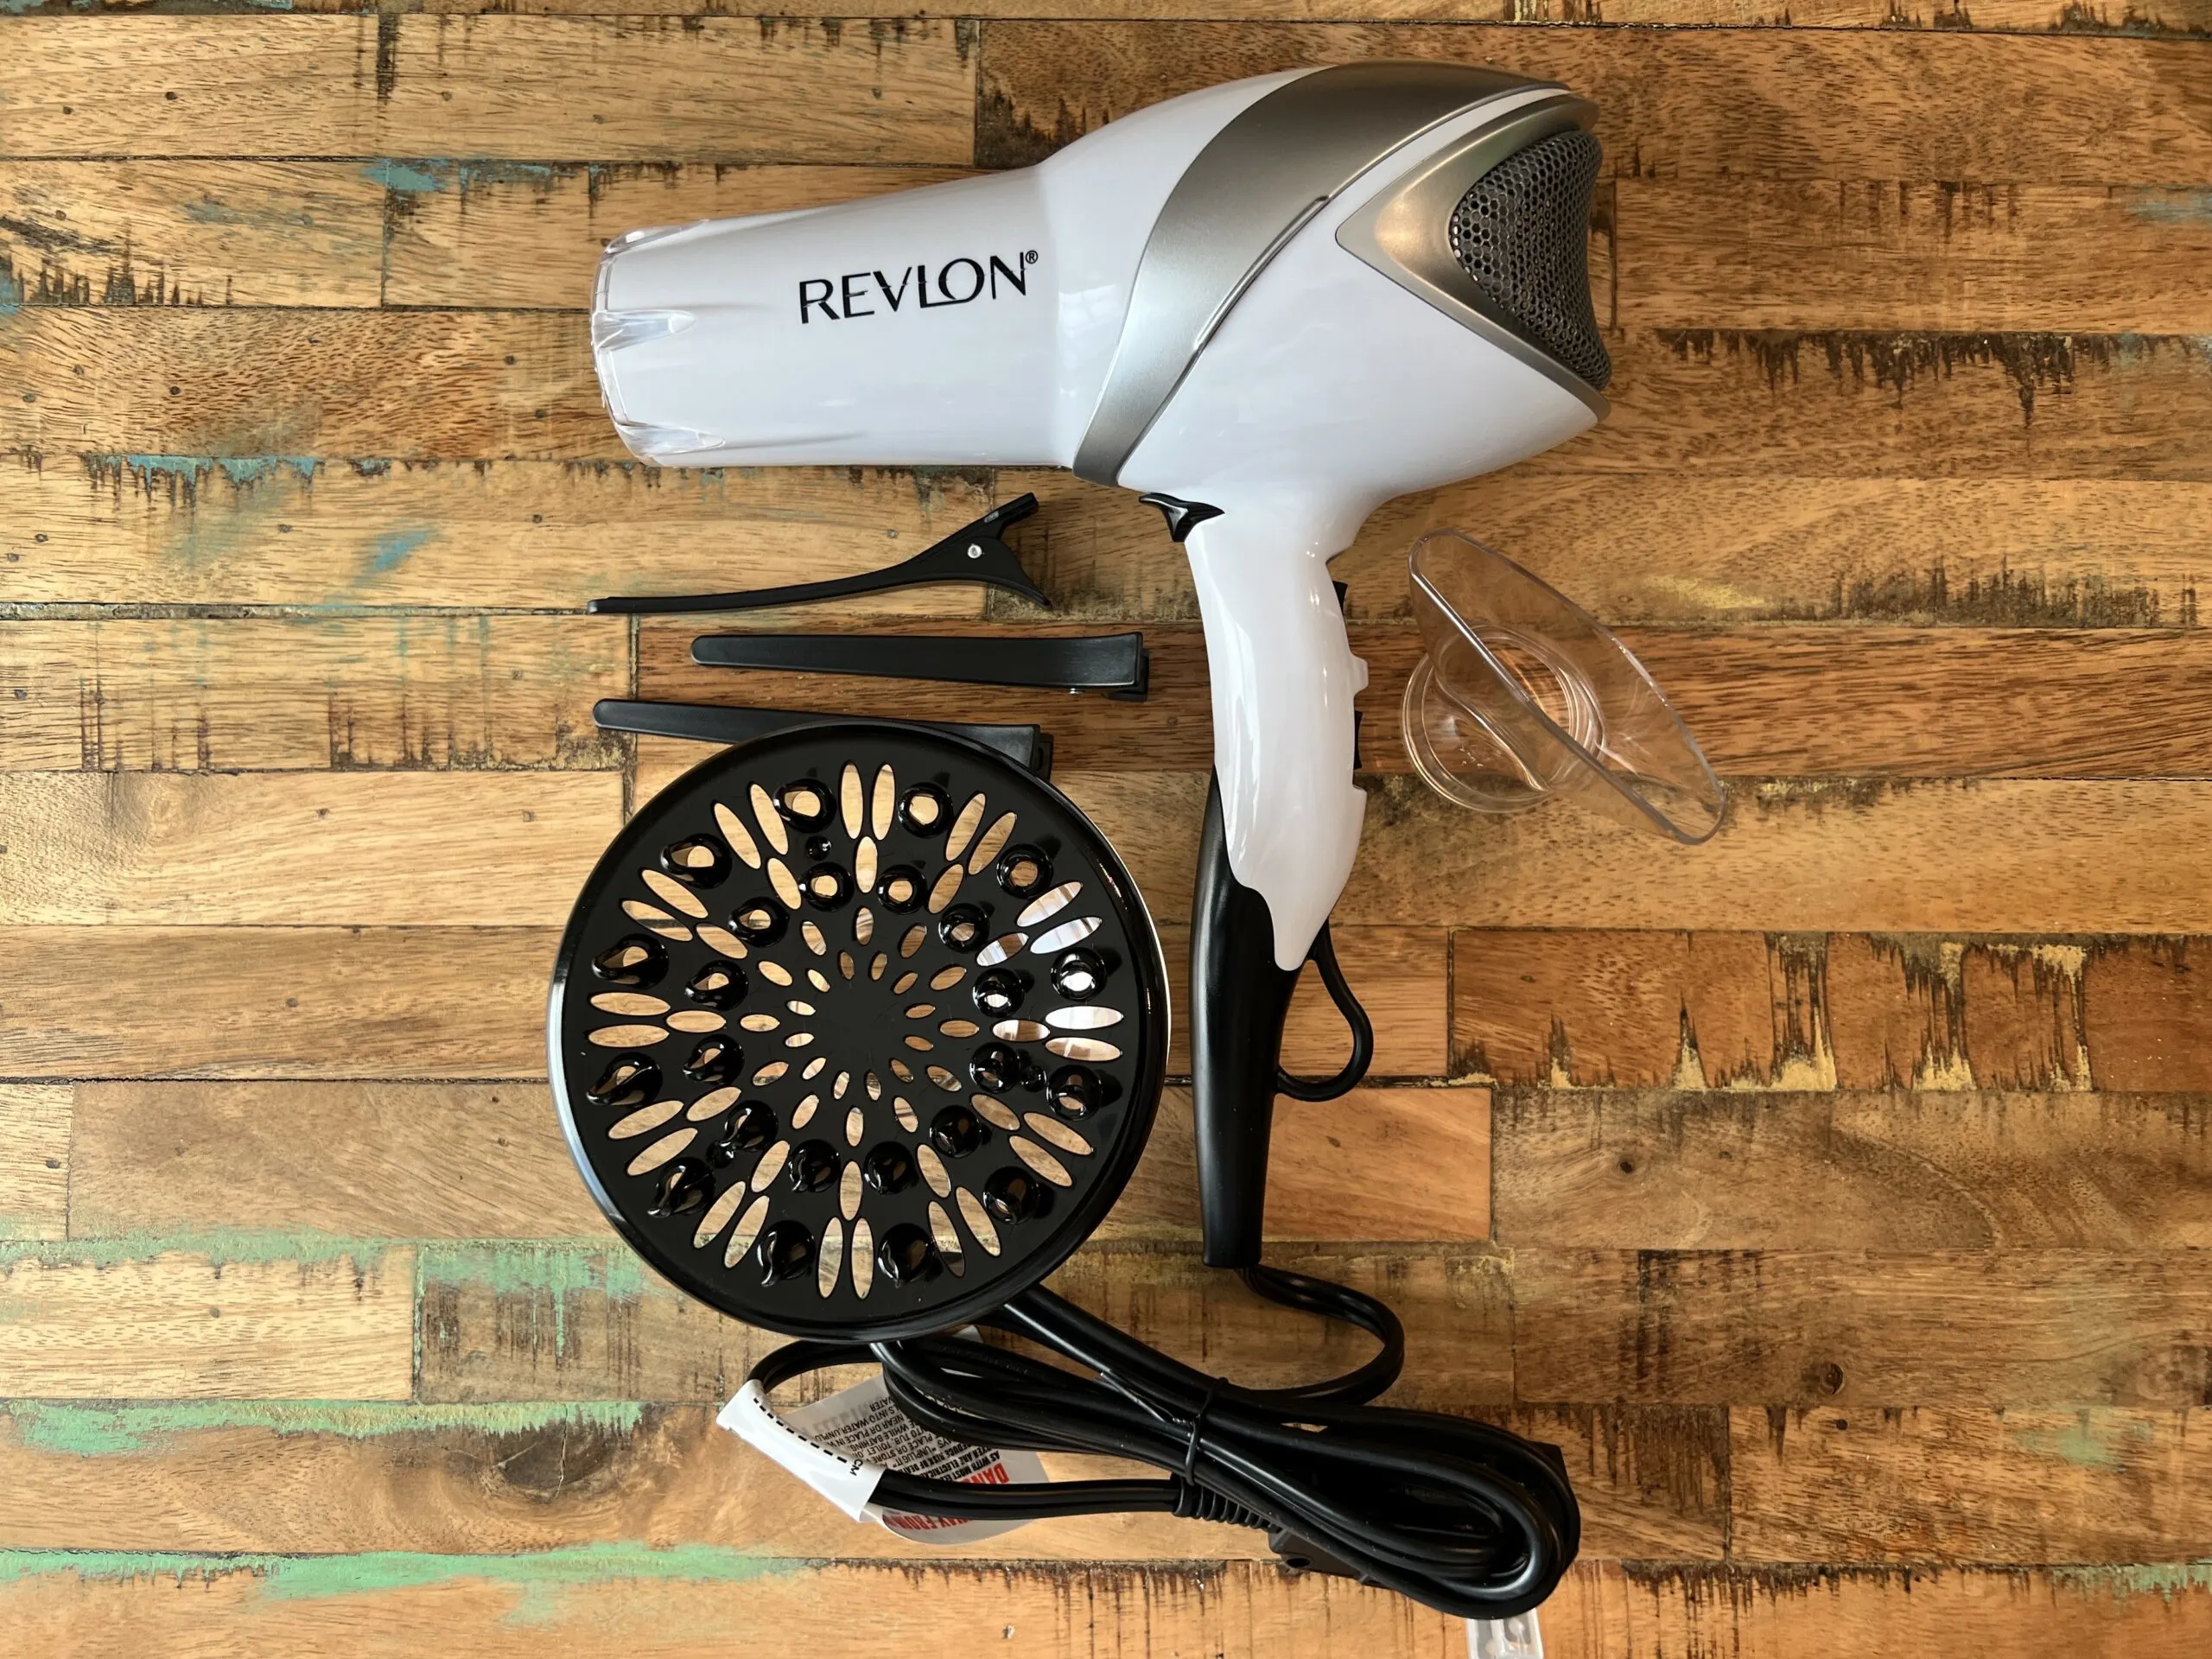 Here's the Revlon Infrared Hair Dryer.